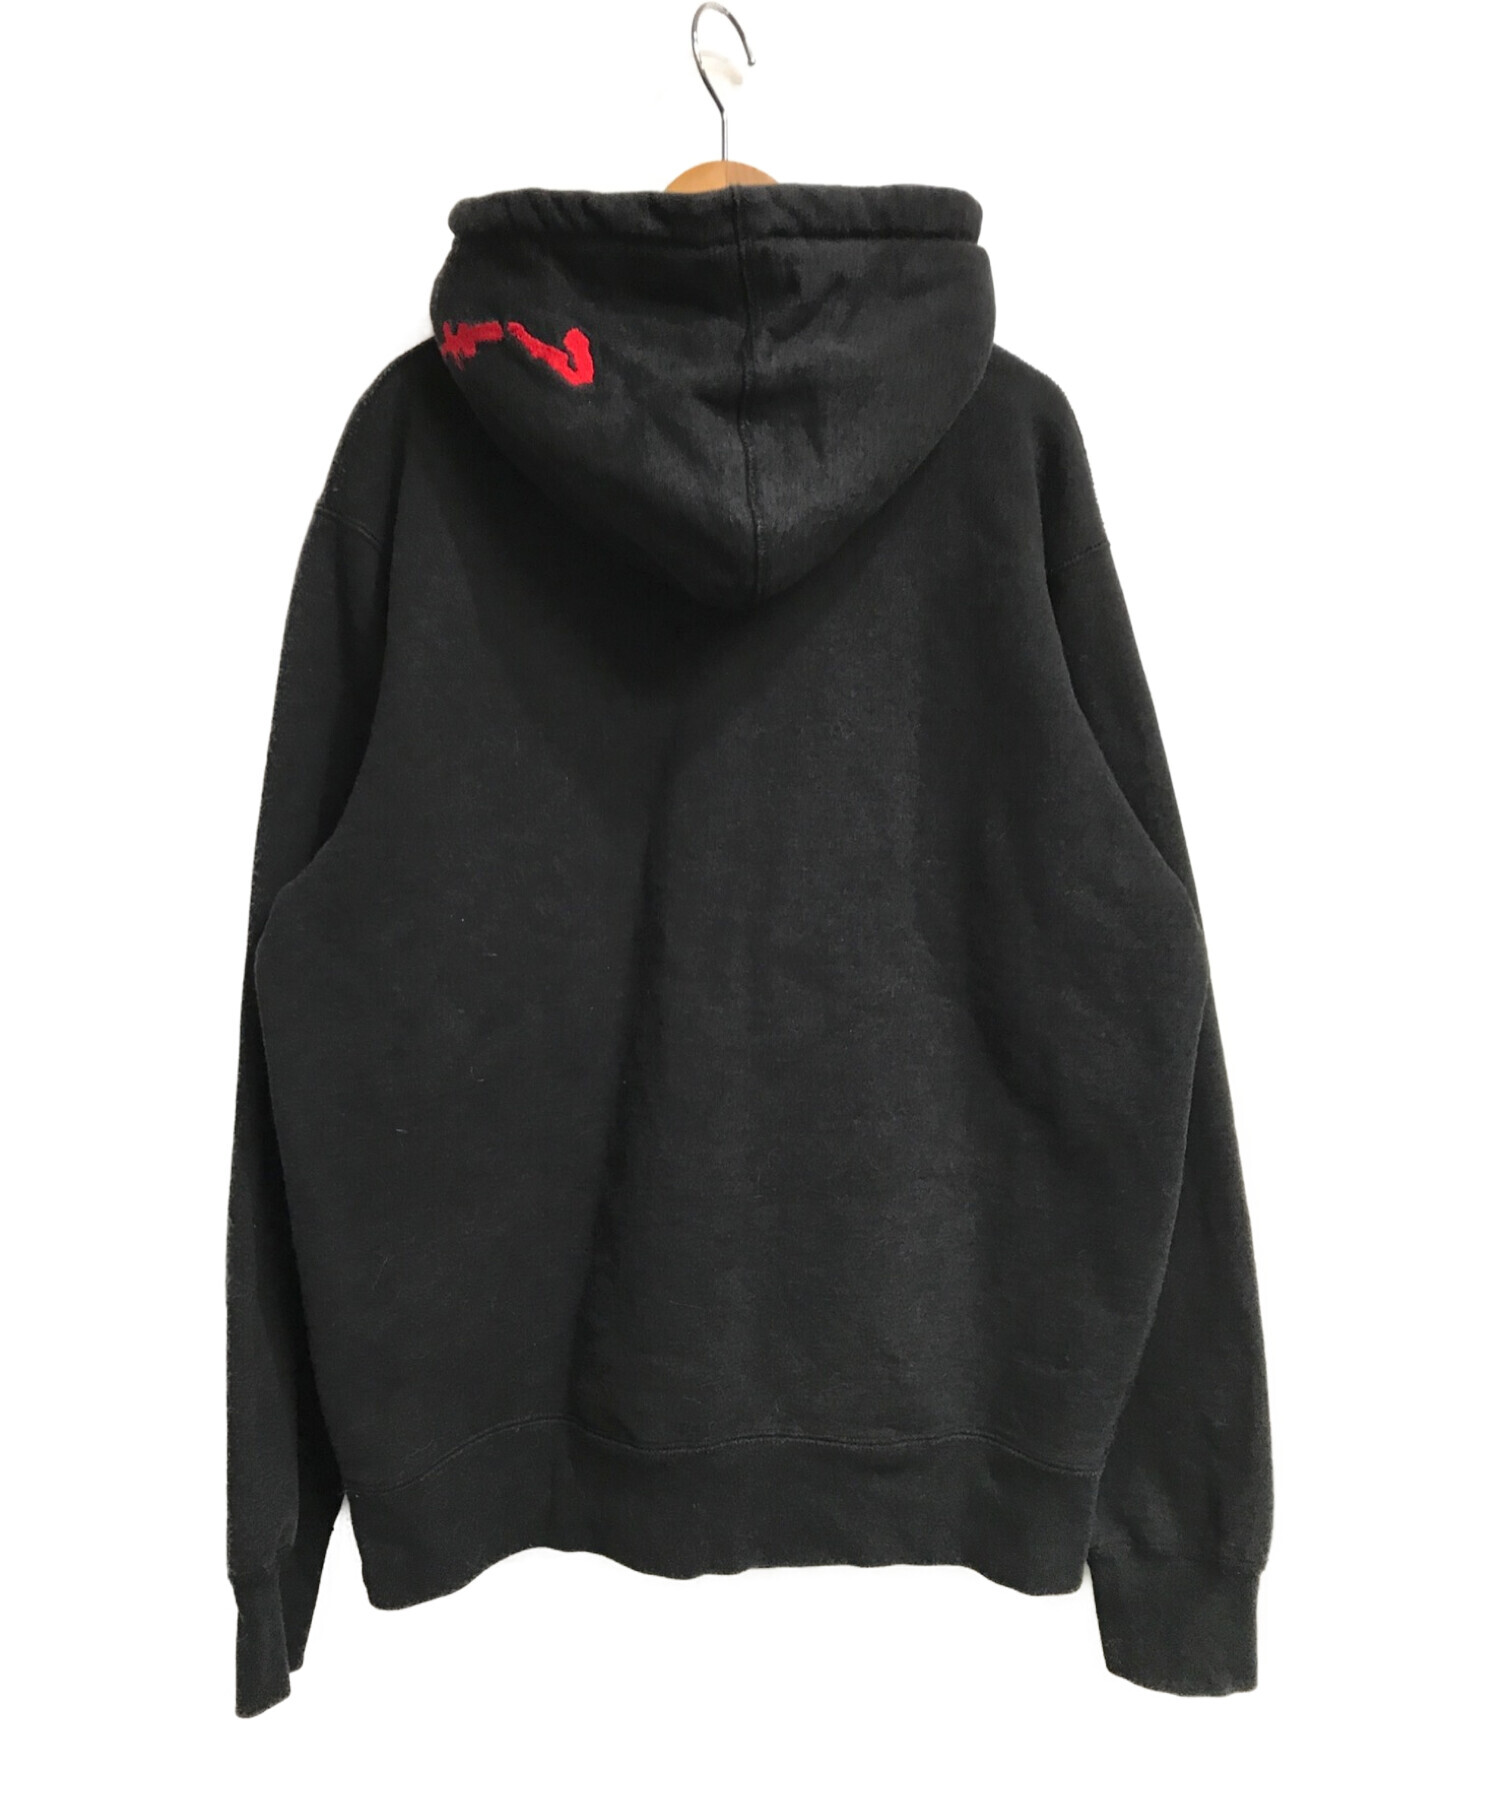 SUPREME× AKIRA (シュプリーム アキラ) Arm Hooded Sweatshirt ブラック サイズ:M